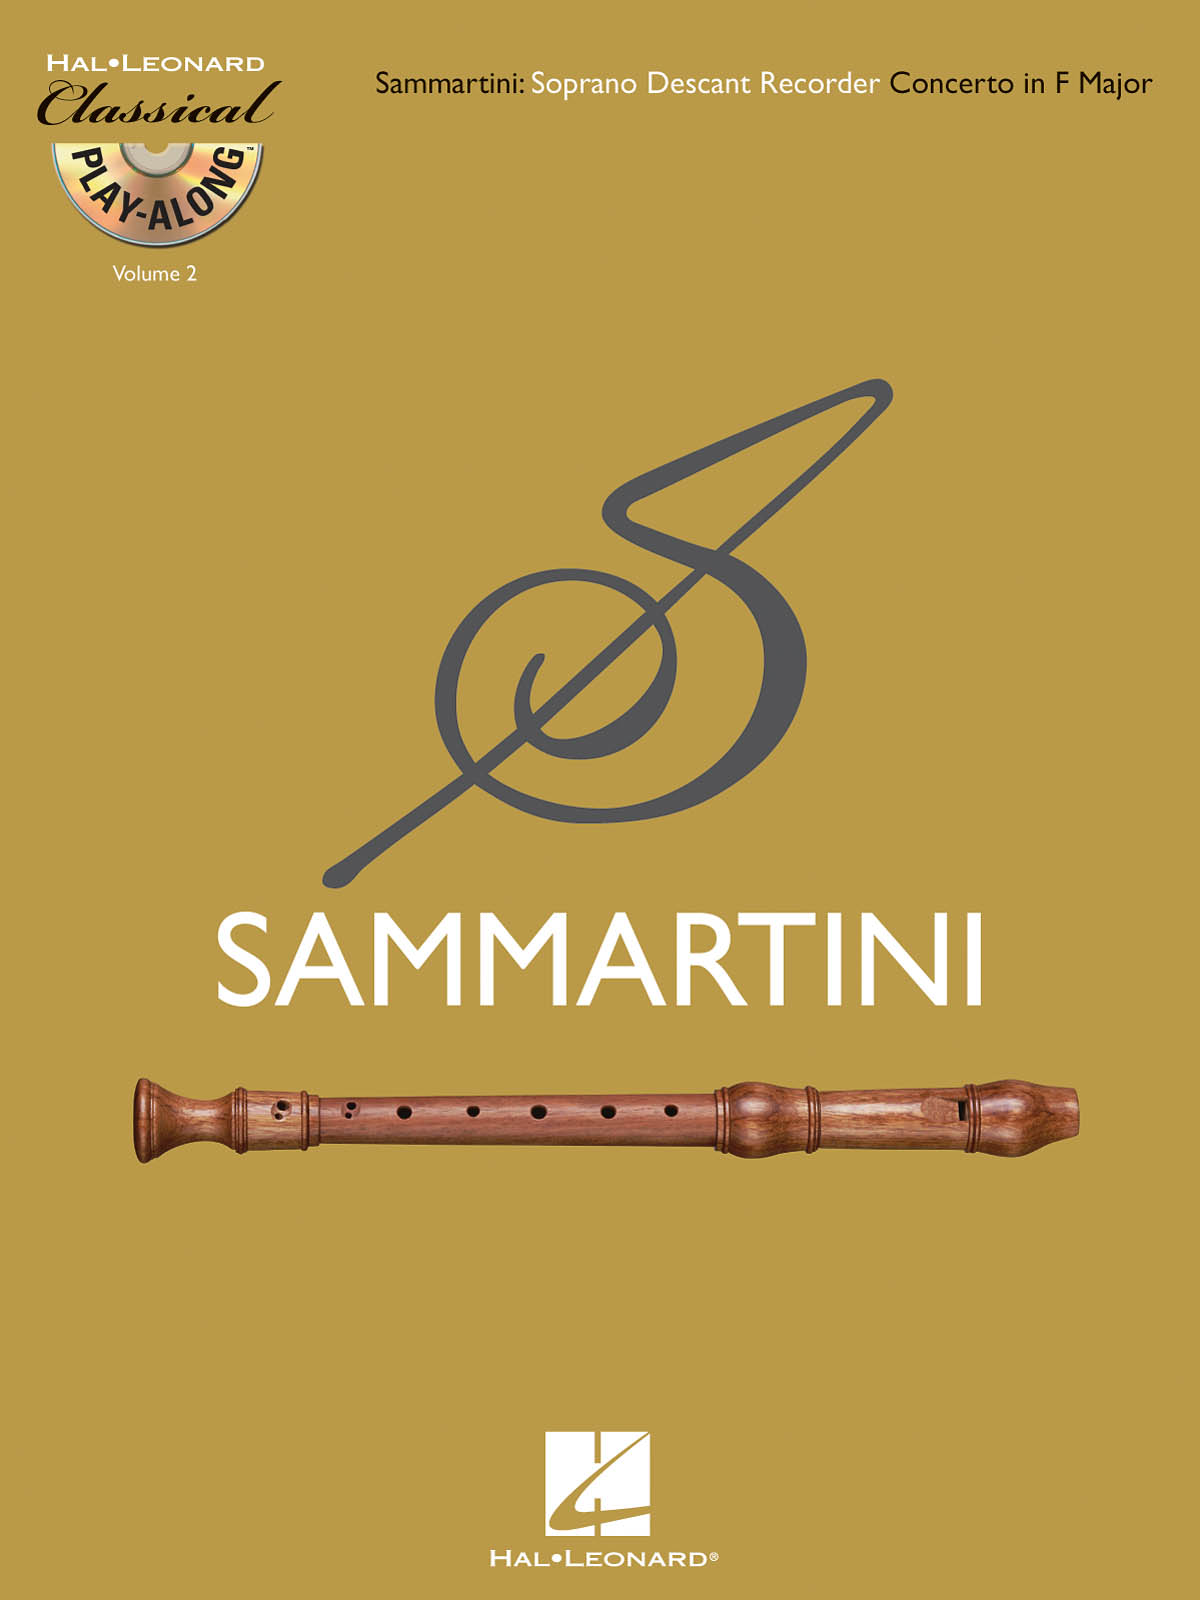 Giuseppe Sammartini: Descant (Soprano) Recorder Concerto in F Major: Recorder: